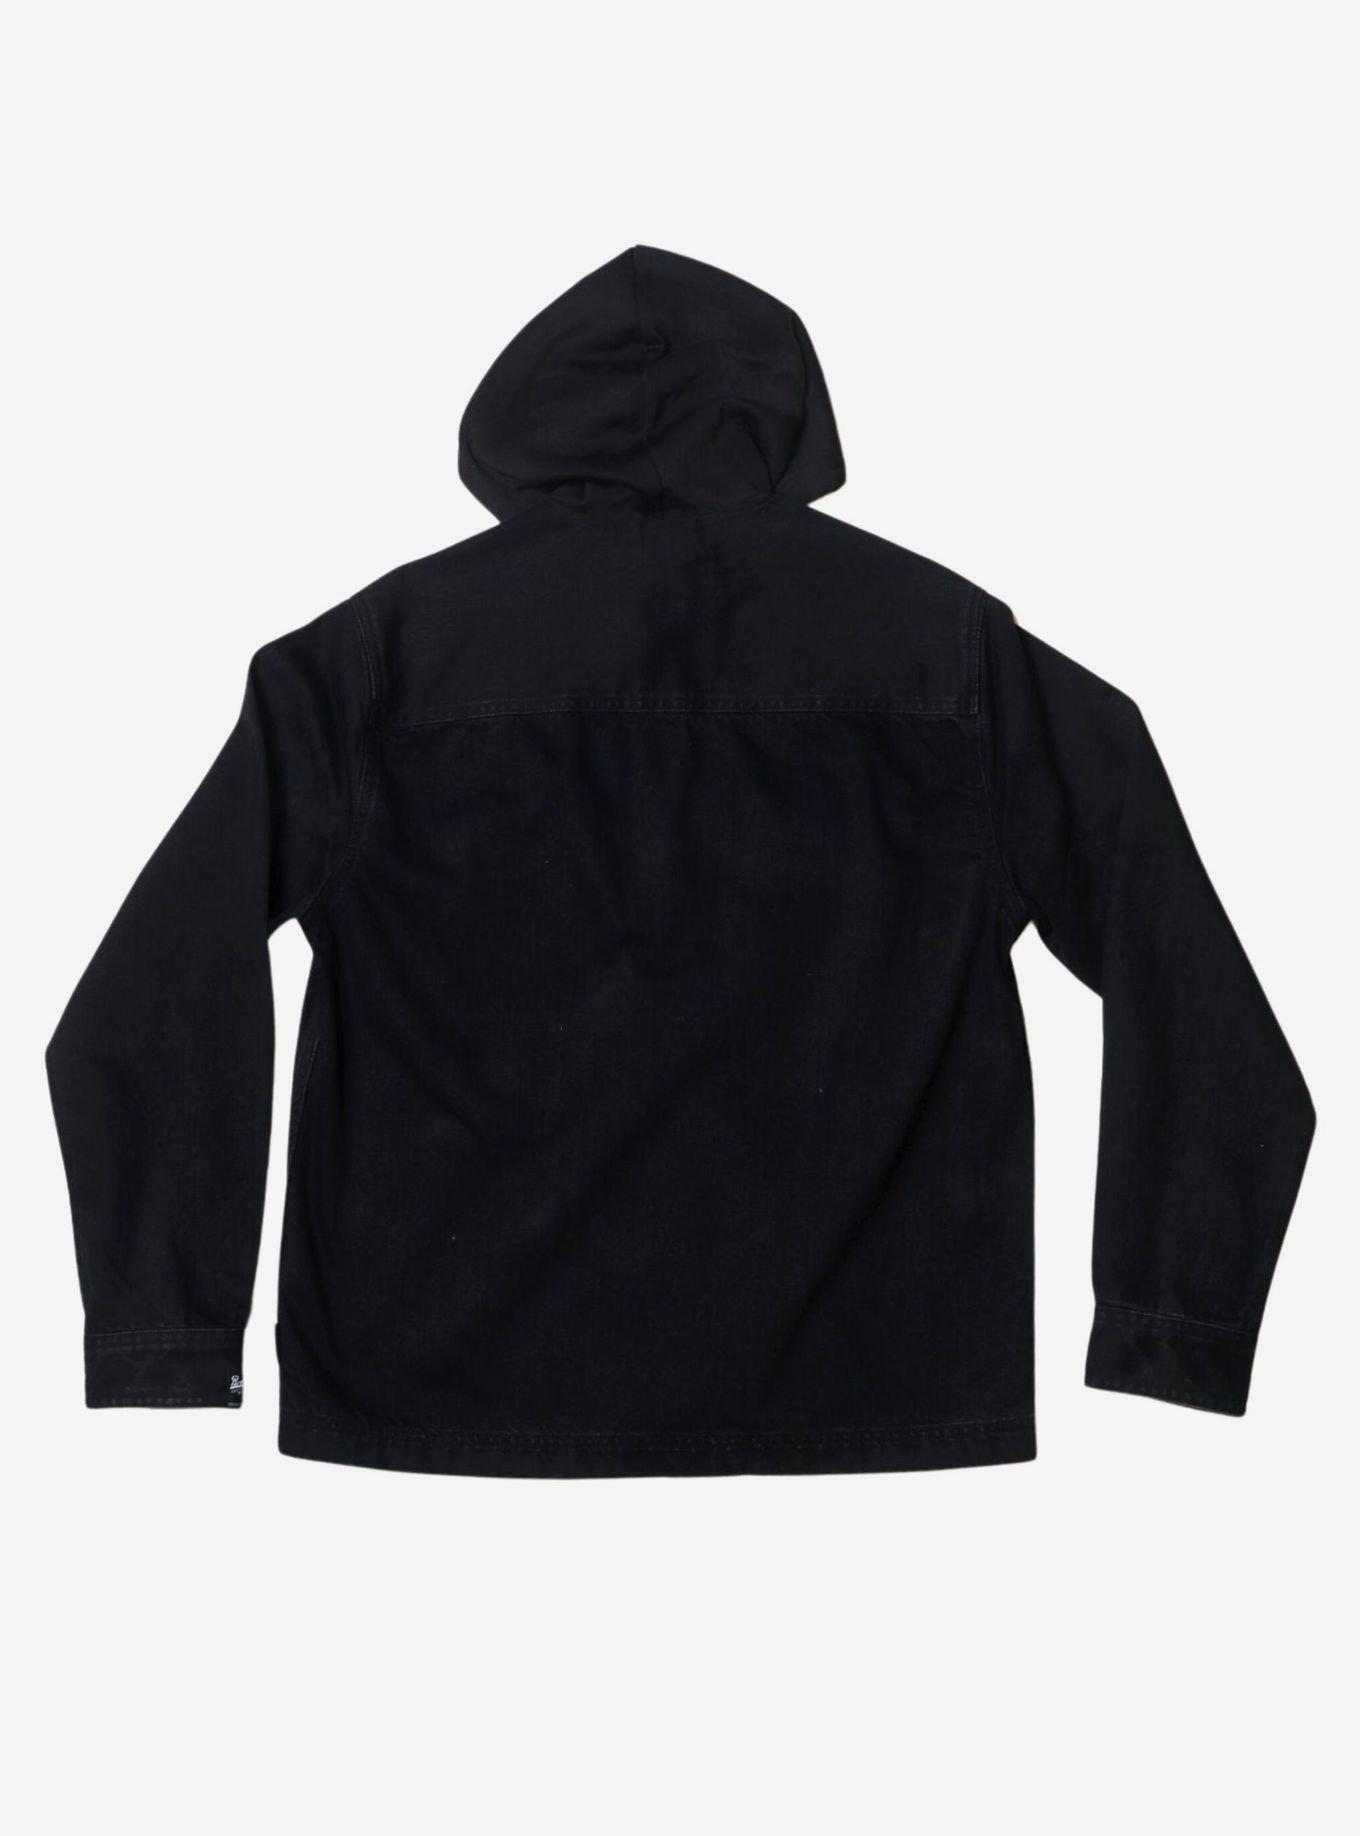 Black Bull Denim Snap Front Hooded Jacket, BLACK, alternate